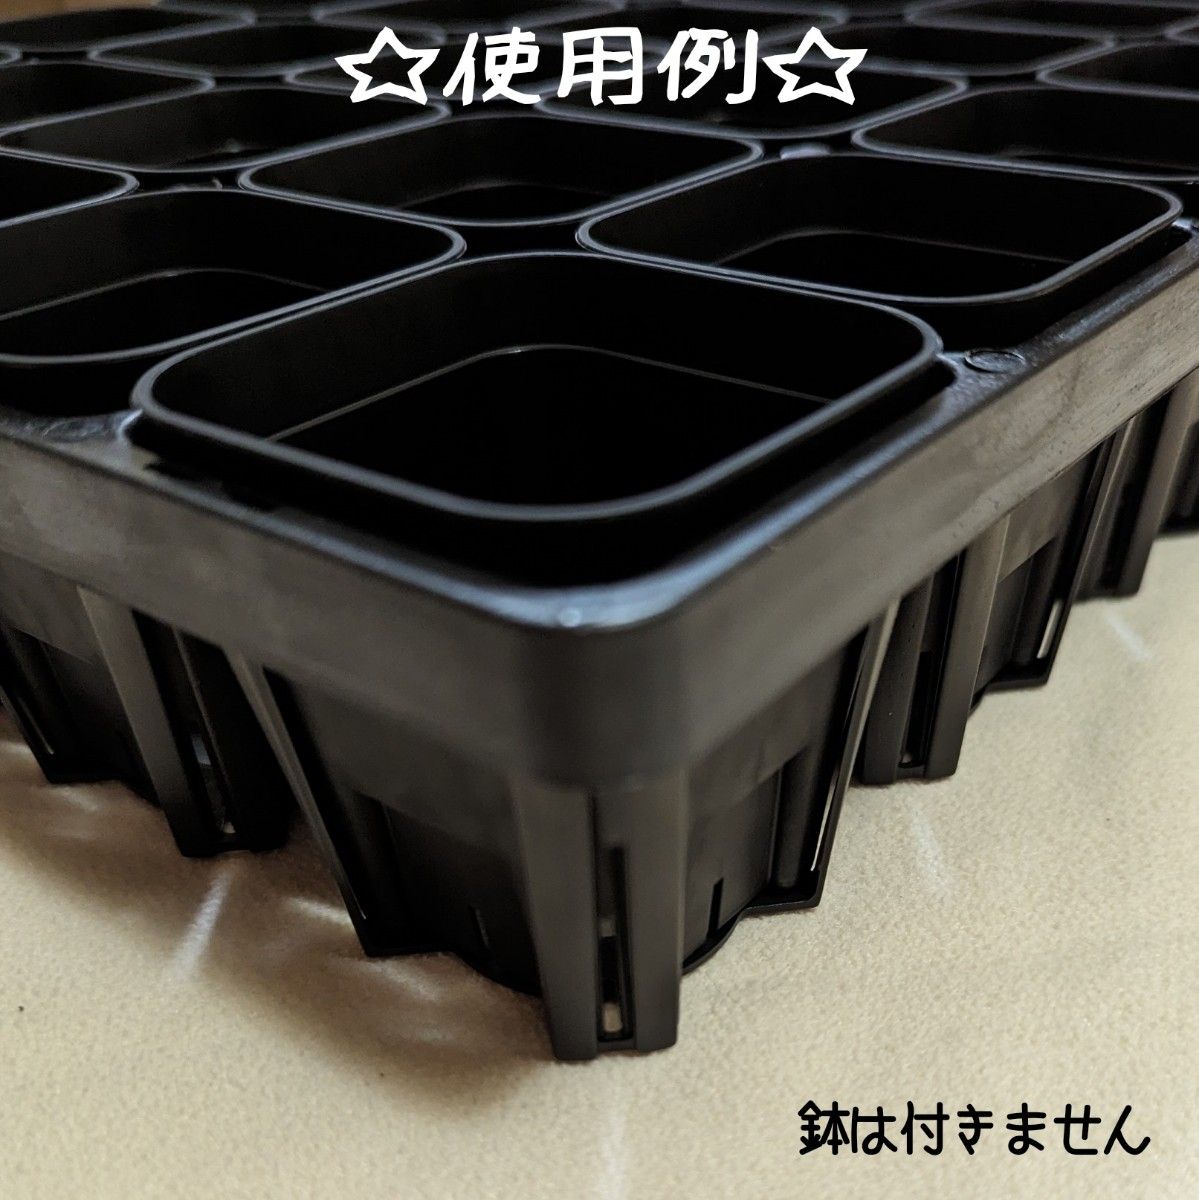 プレステラ75 専用システムトレー【黒】プラ鉢スリット鉢 多肉植物